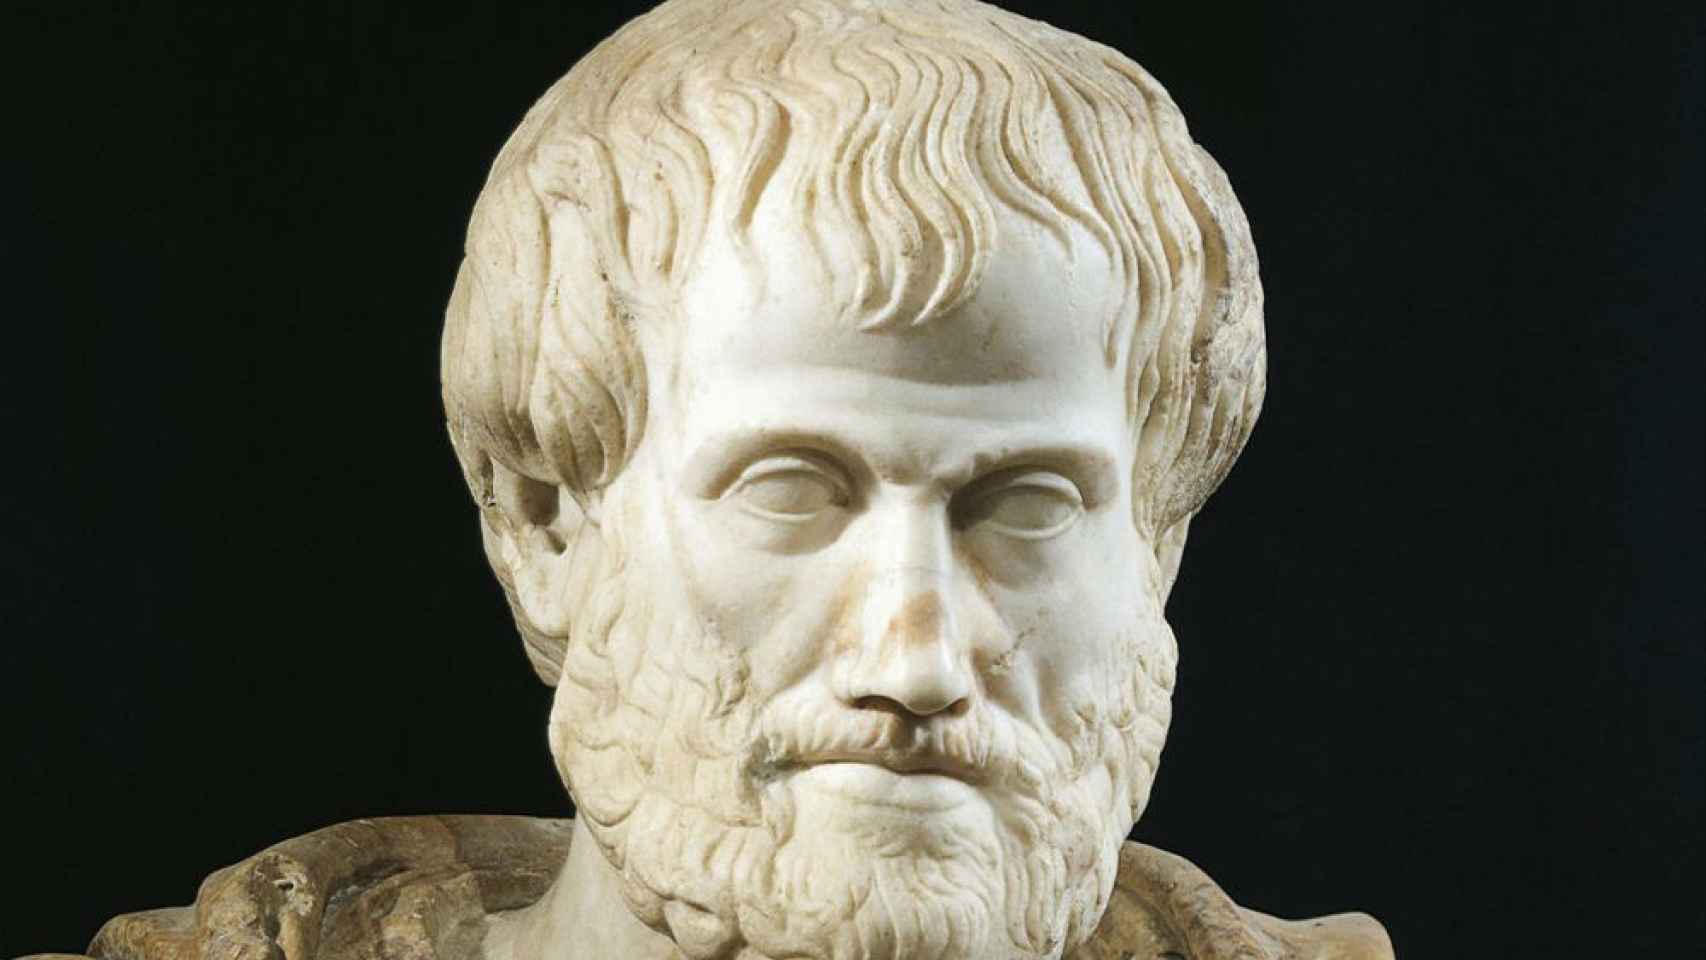 Aristóteles.